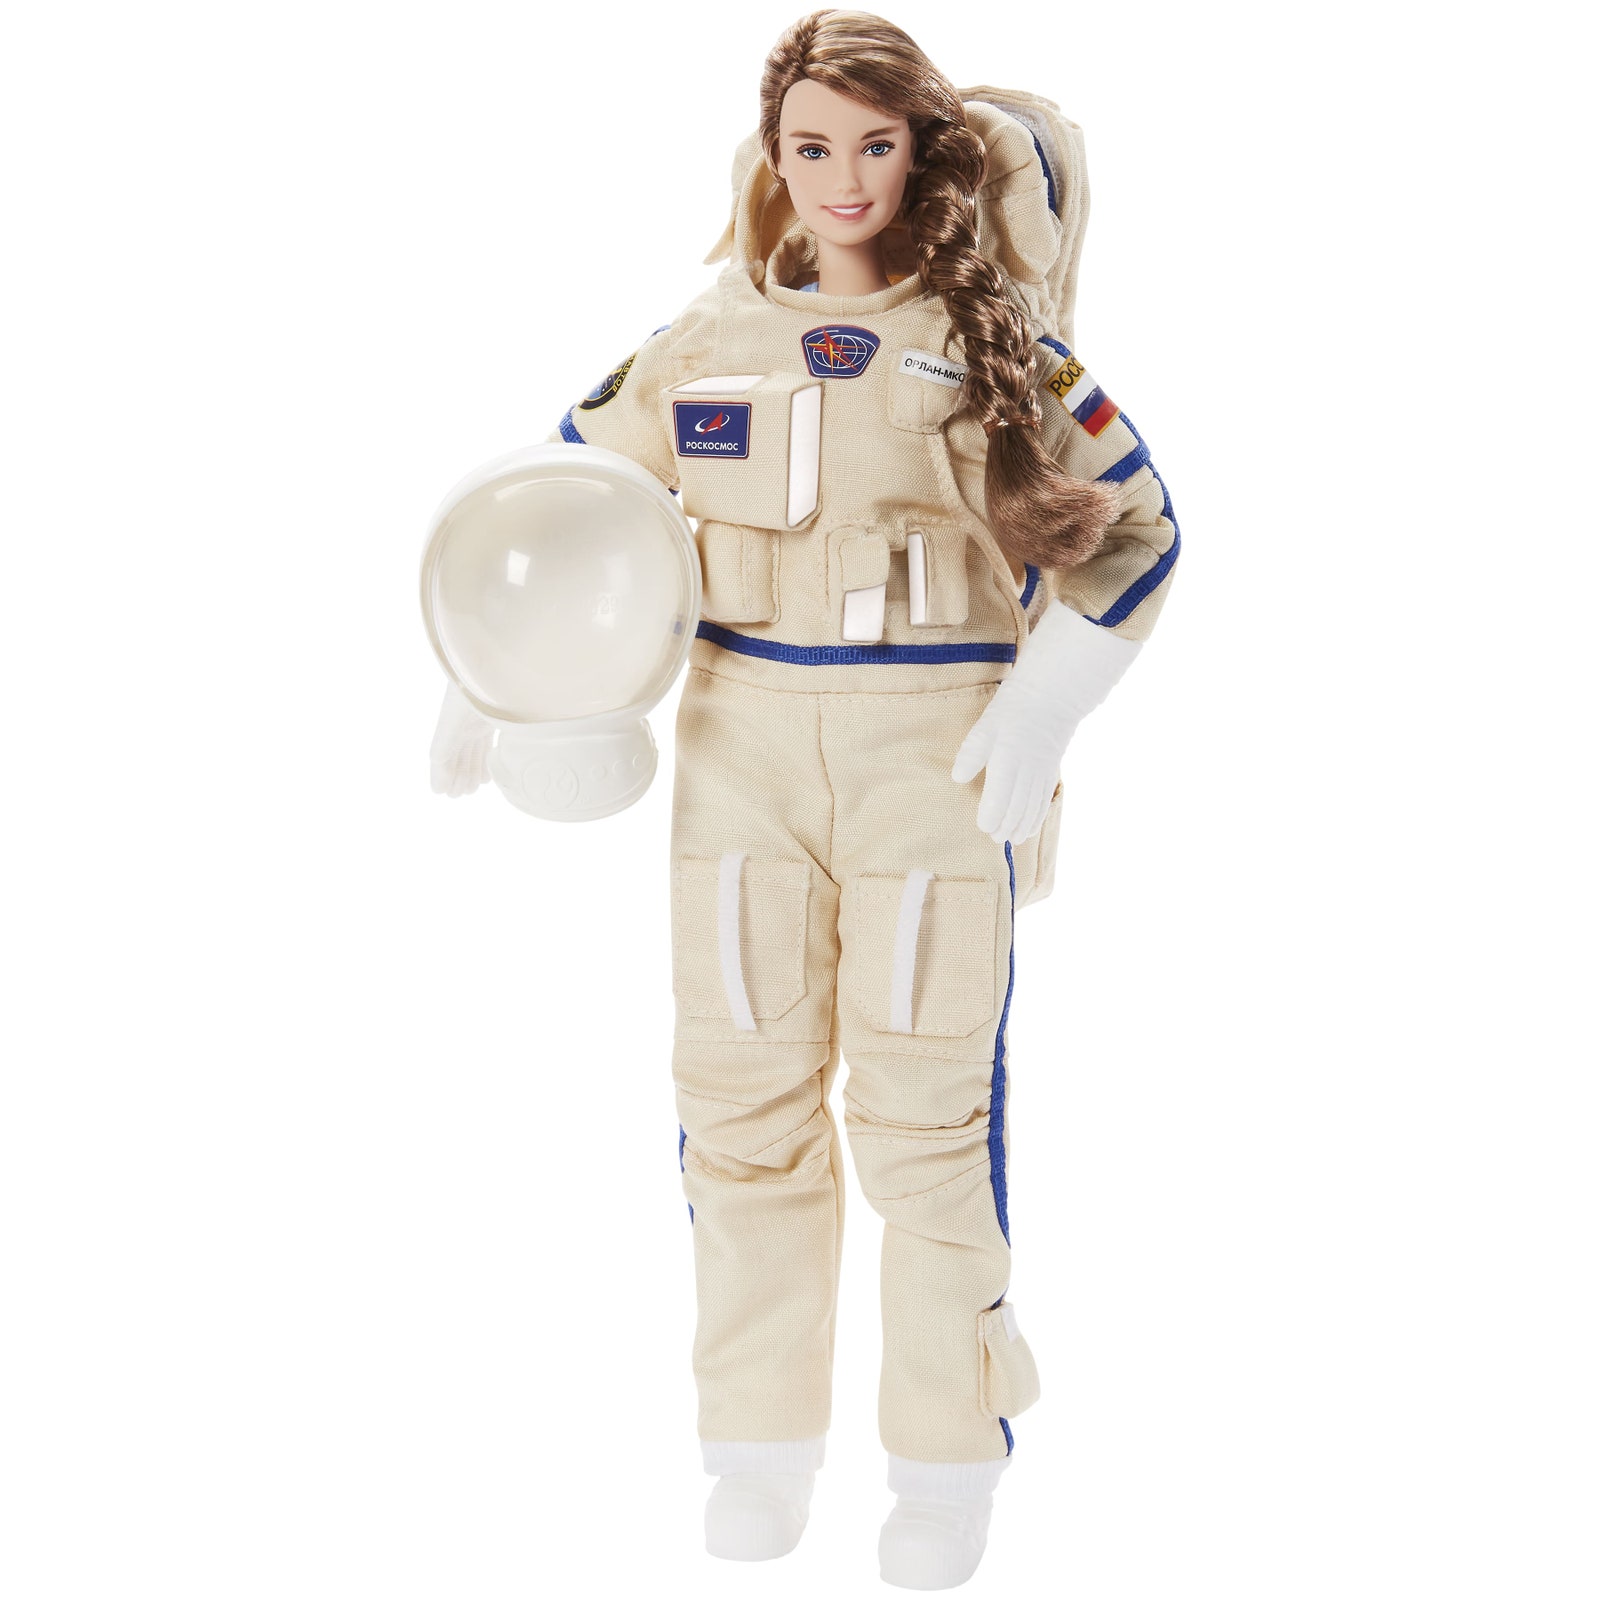 Barbie посвятил куклу Анне Кикиной единственной женщине в отряде космонавтов Роскосмоса